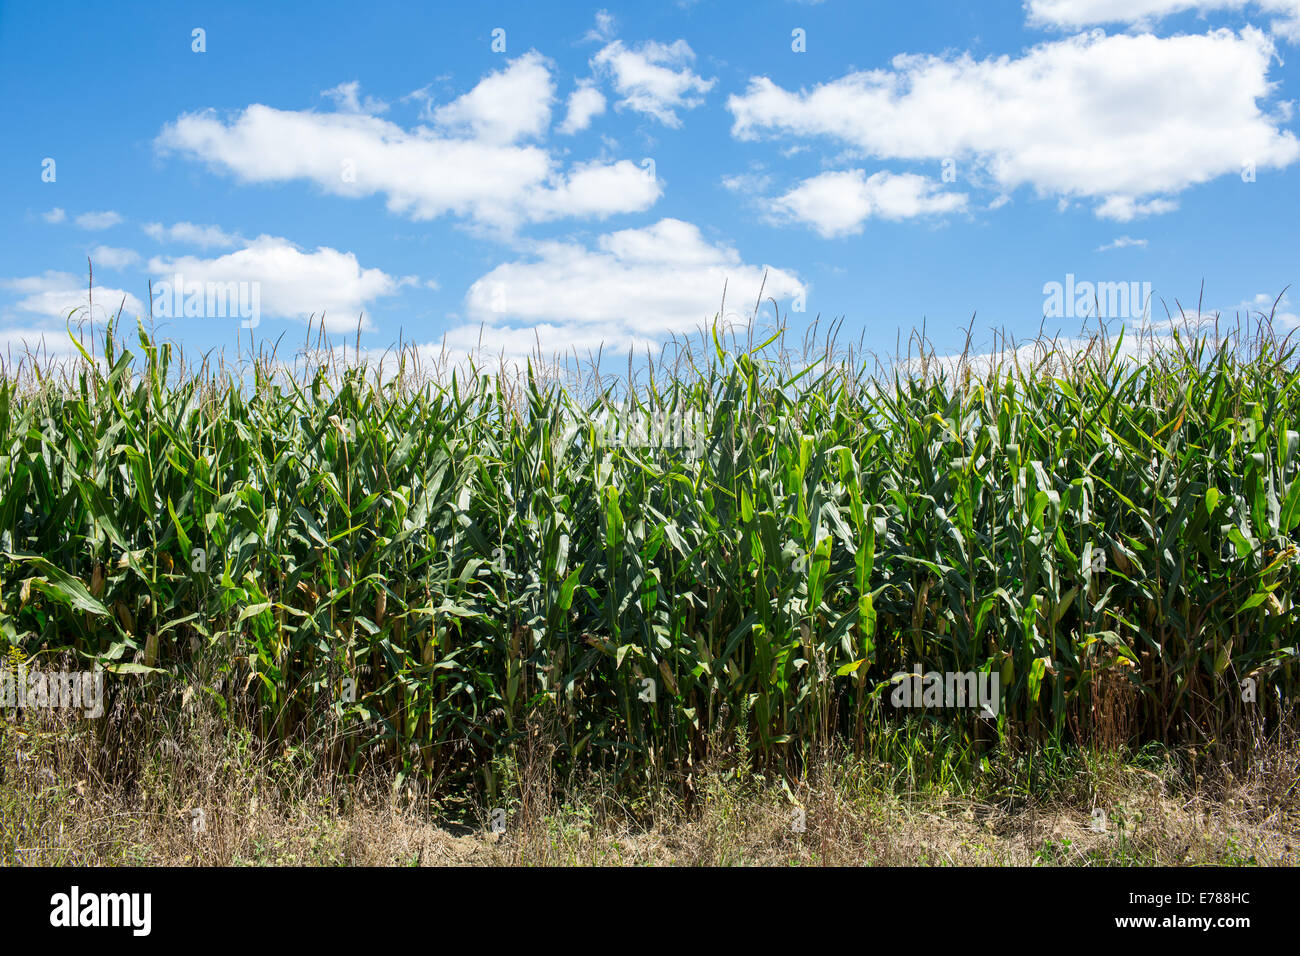 A Corn Field located in Rural Ohio Stock Photo